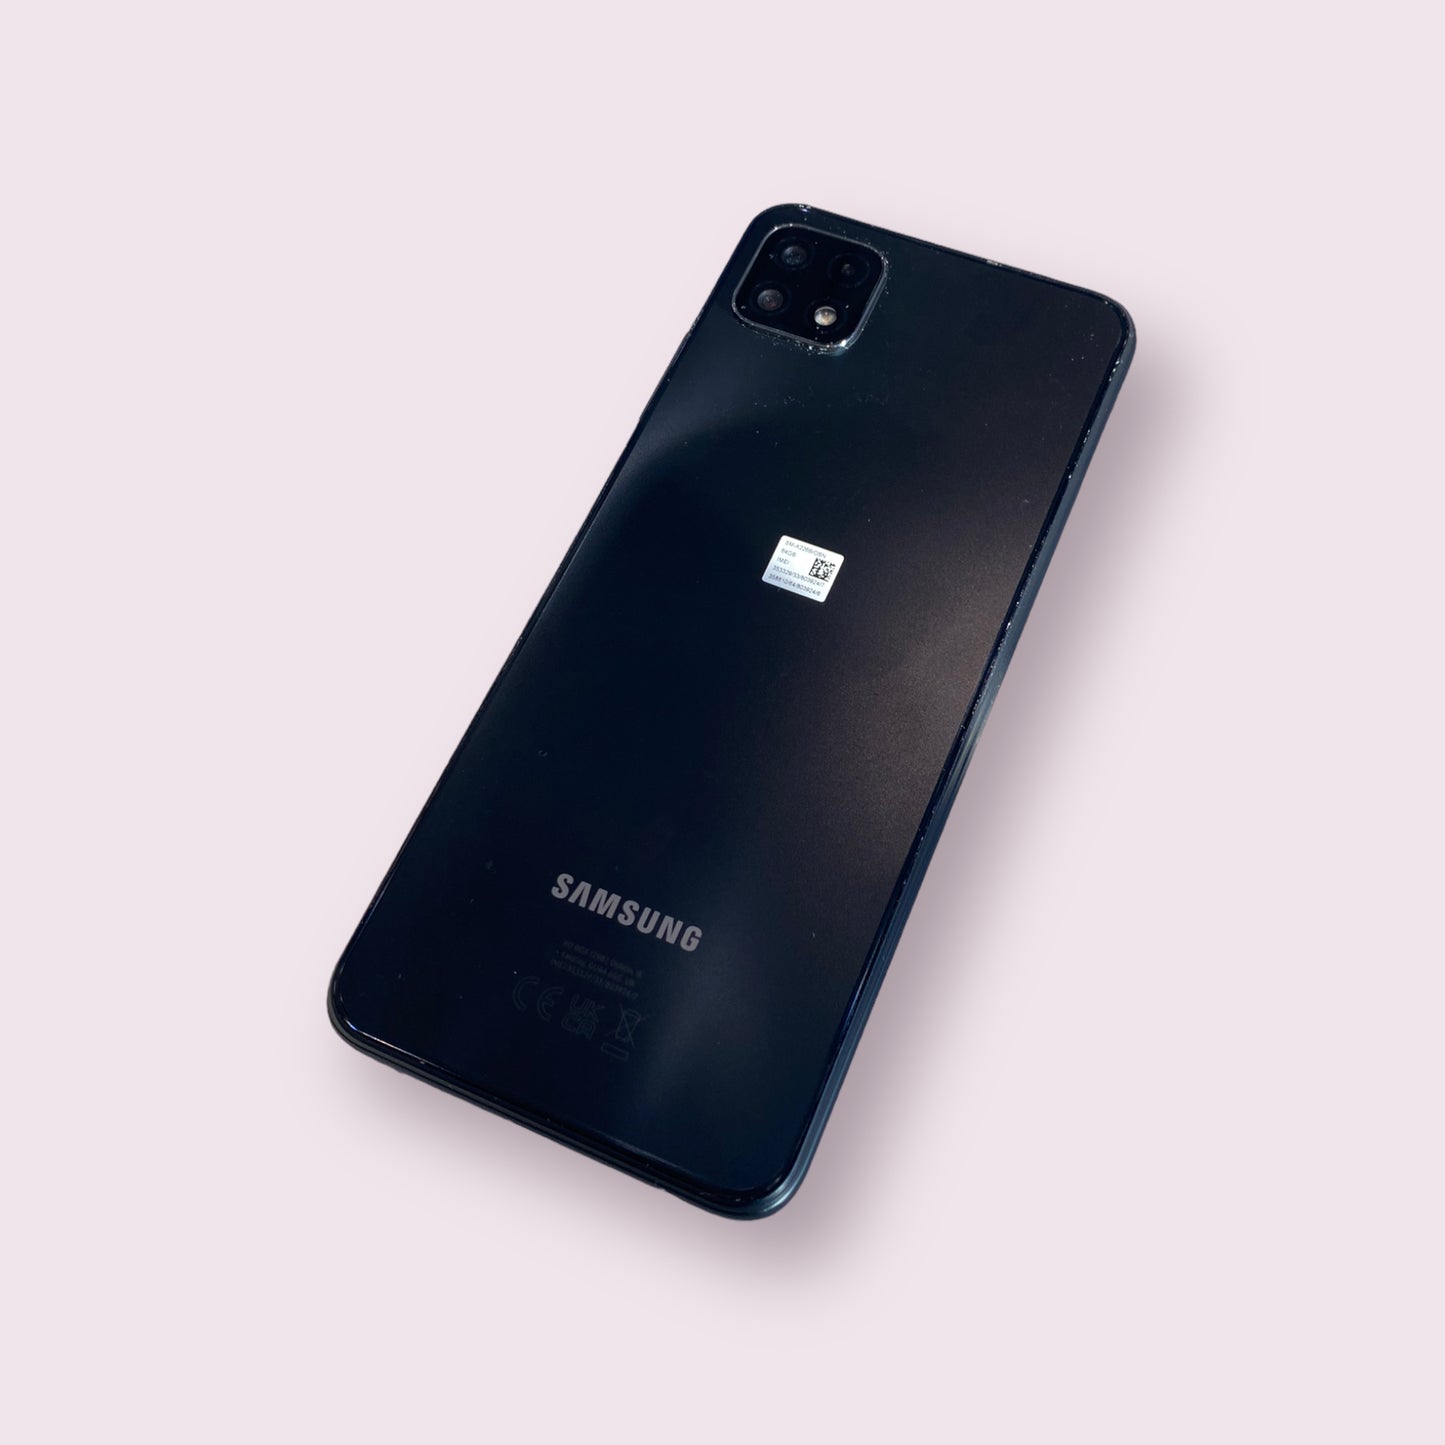 Samsung Galaxy A22 5G A226B 64GB black Dual Sim smartphone - Unlocked - Grade A